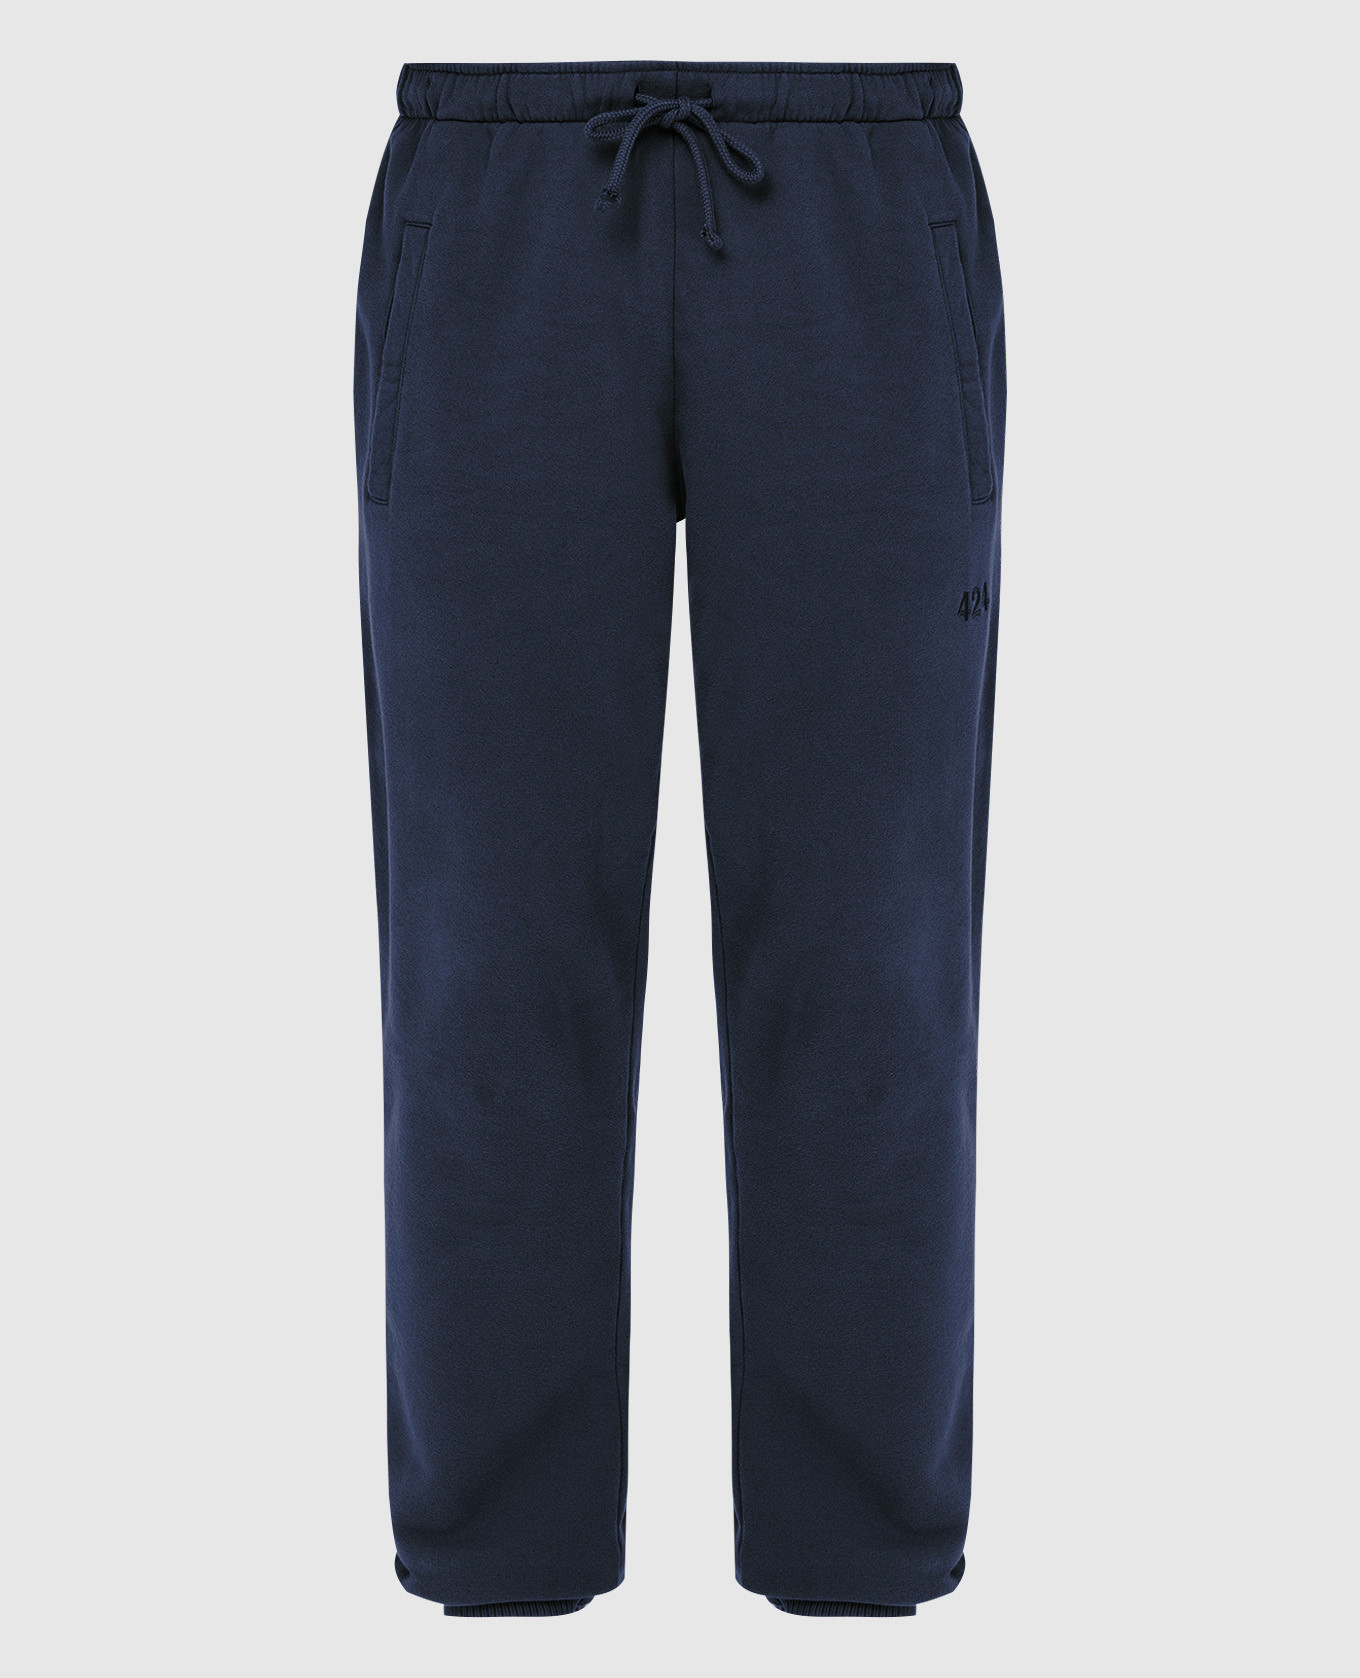 Темно-синие cпортивные брюки с вышивкой логотипа